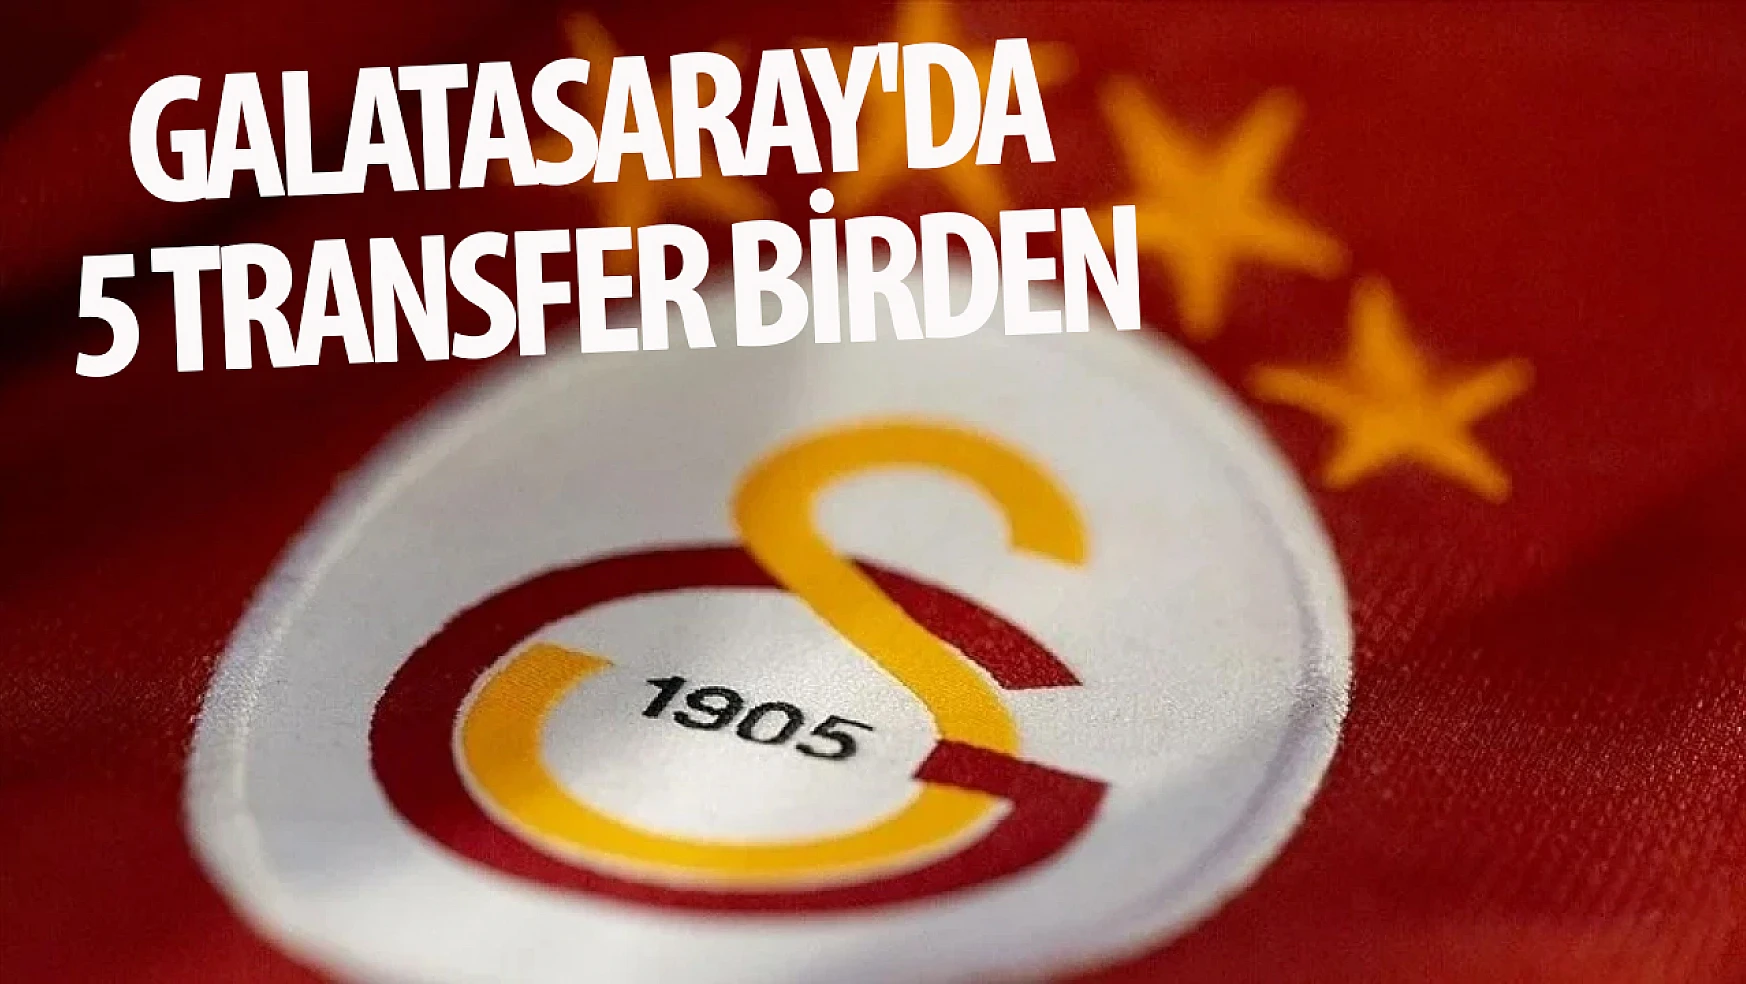 Galatasaray'da 5 transfer birden!